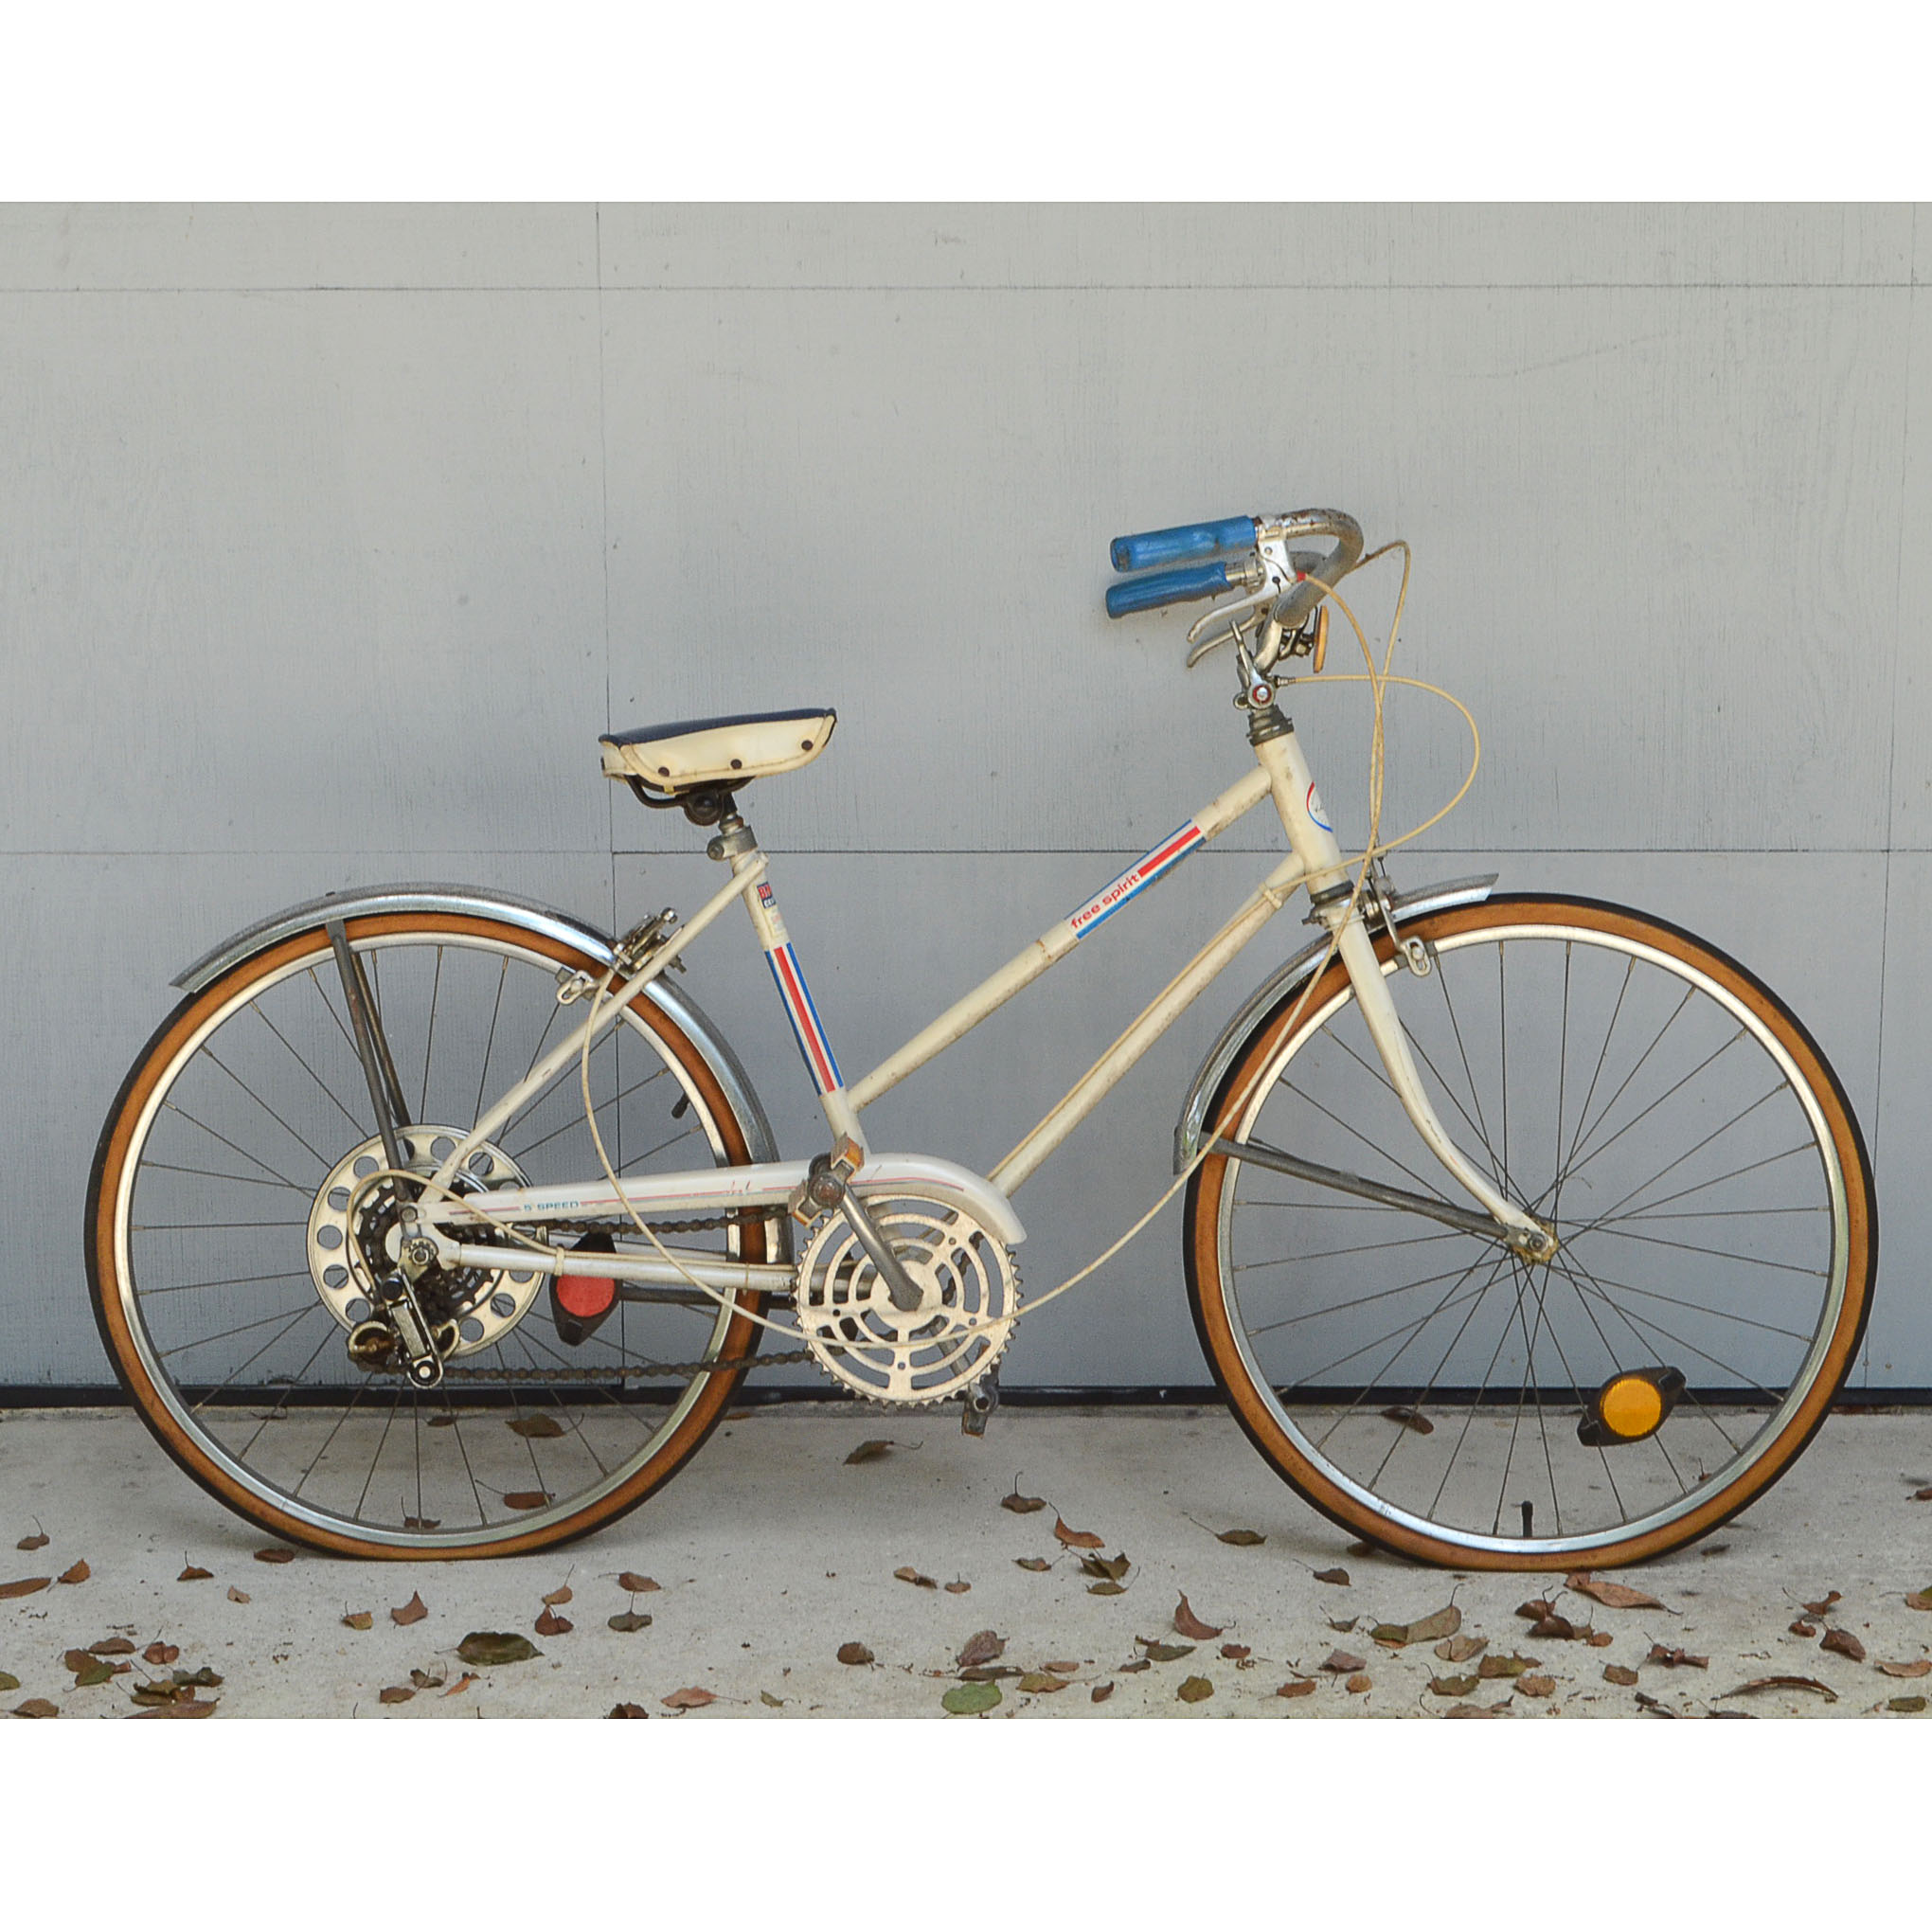 vintage free spirit bike